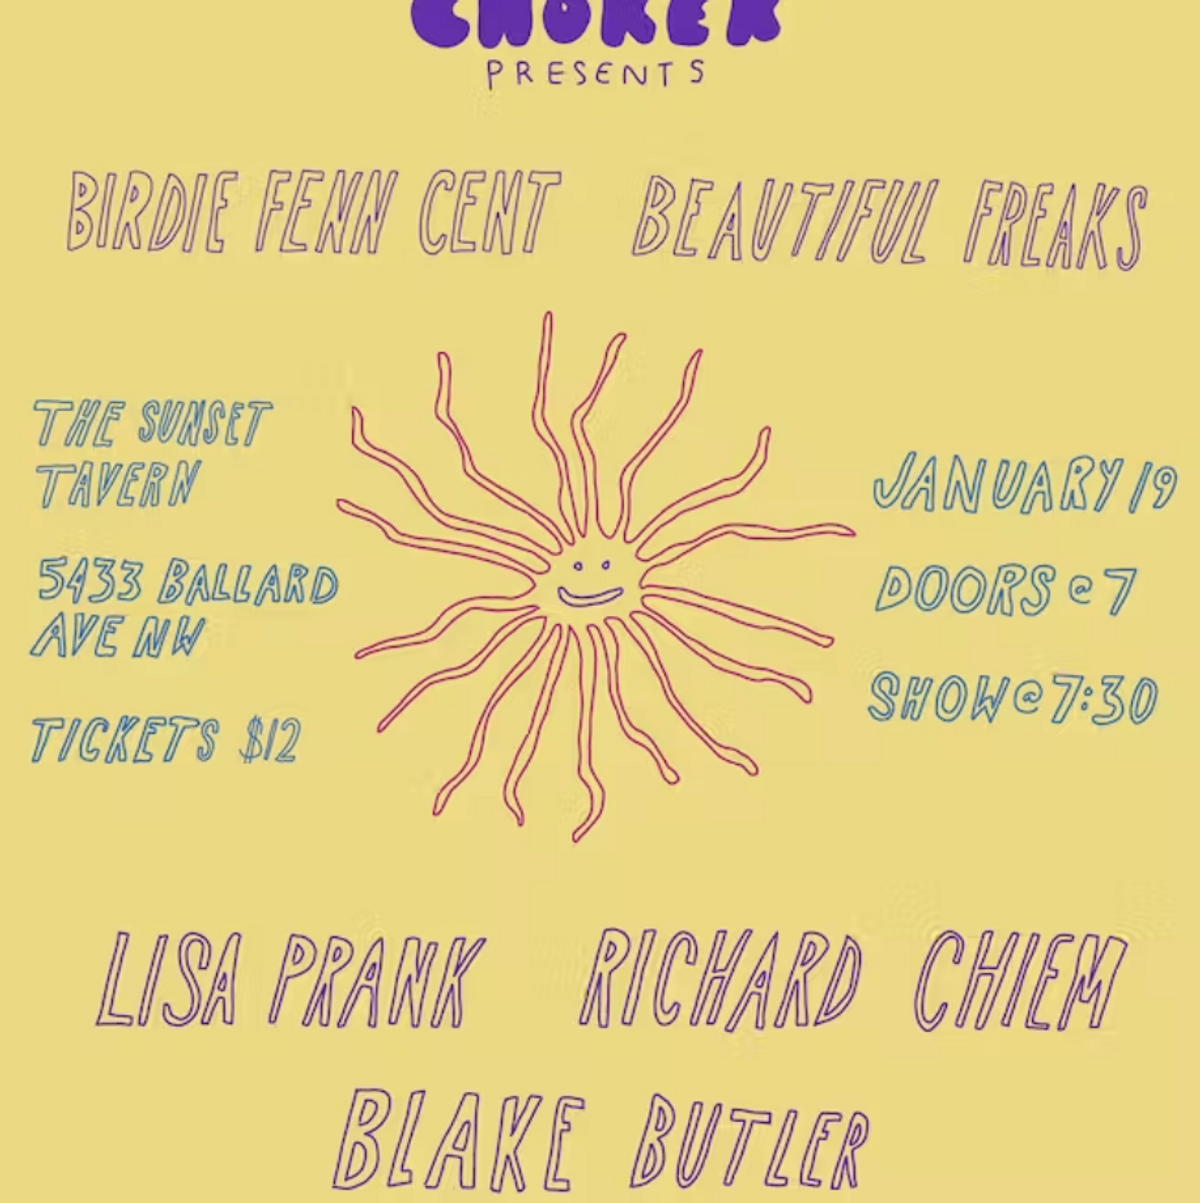 Choker呈现：布莱克·巴特勒、伯迪·芬恩·森特、理查德·奇姆、美丽怪人和丽莎·普兰克在西雅图的夕阳酒馆演出 - 2019年1月19日，星期五